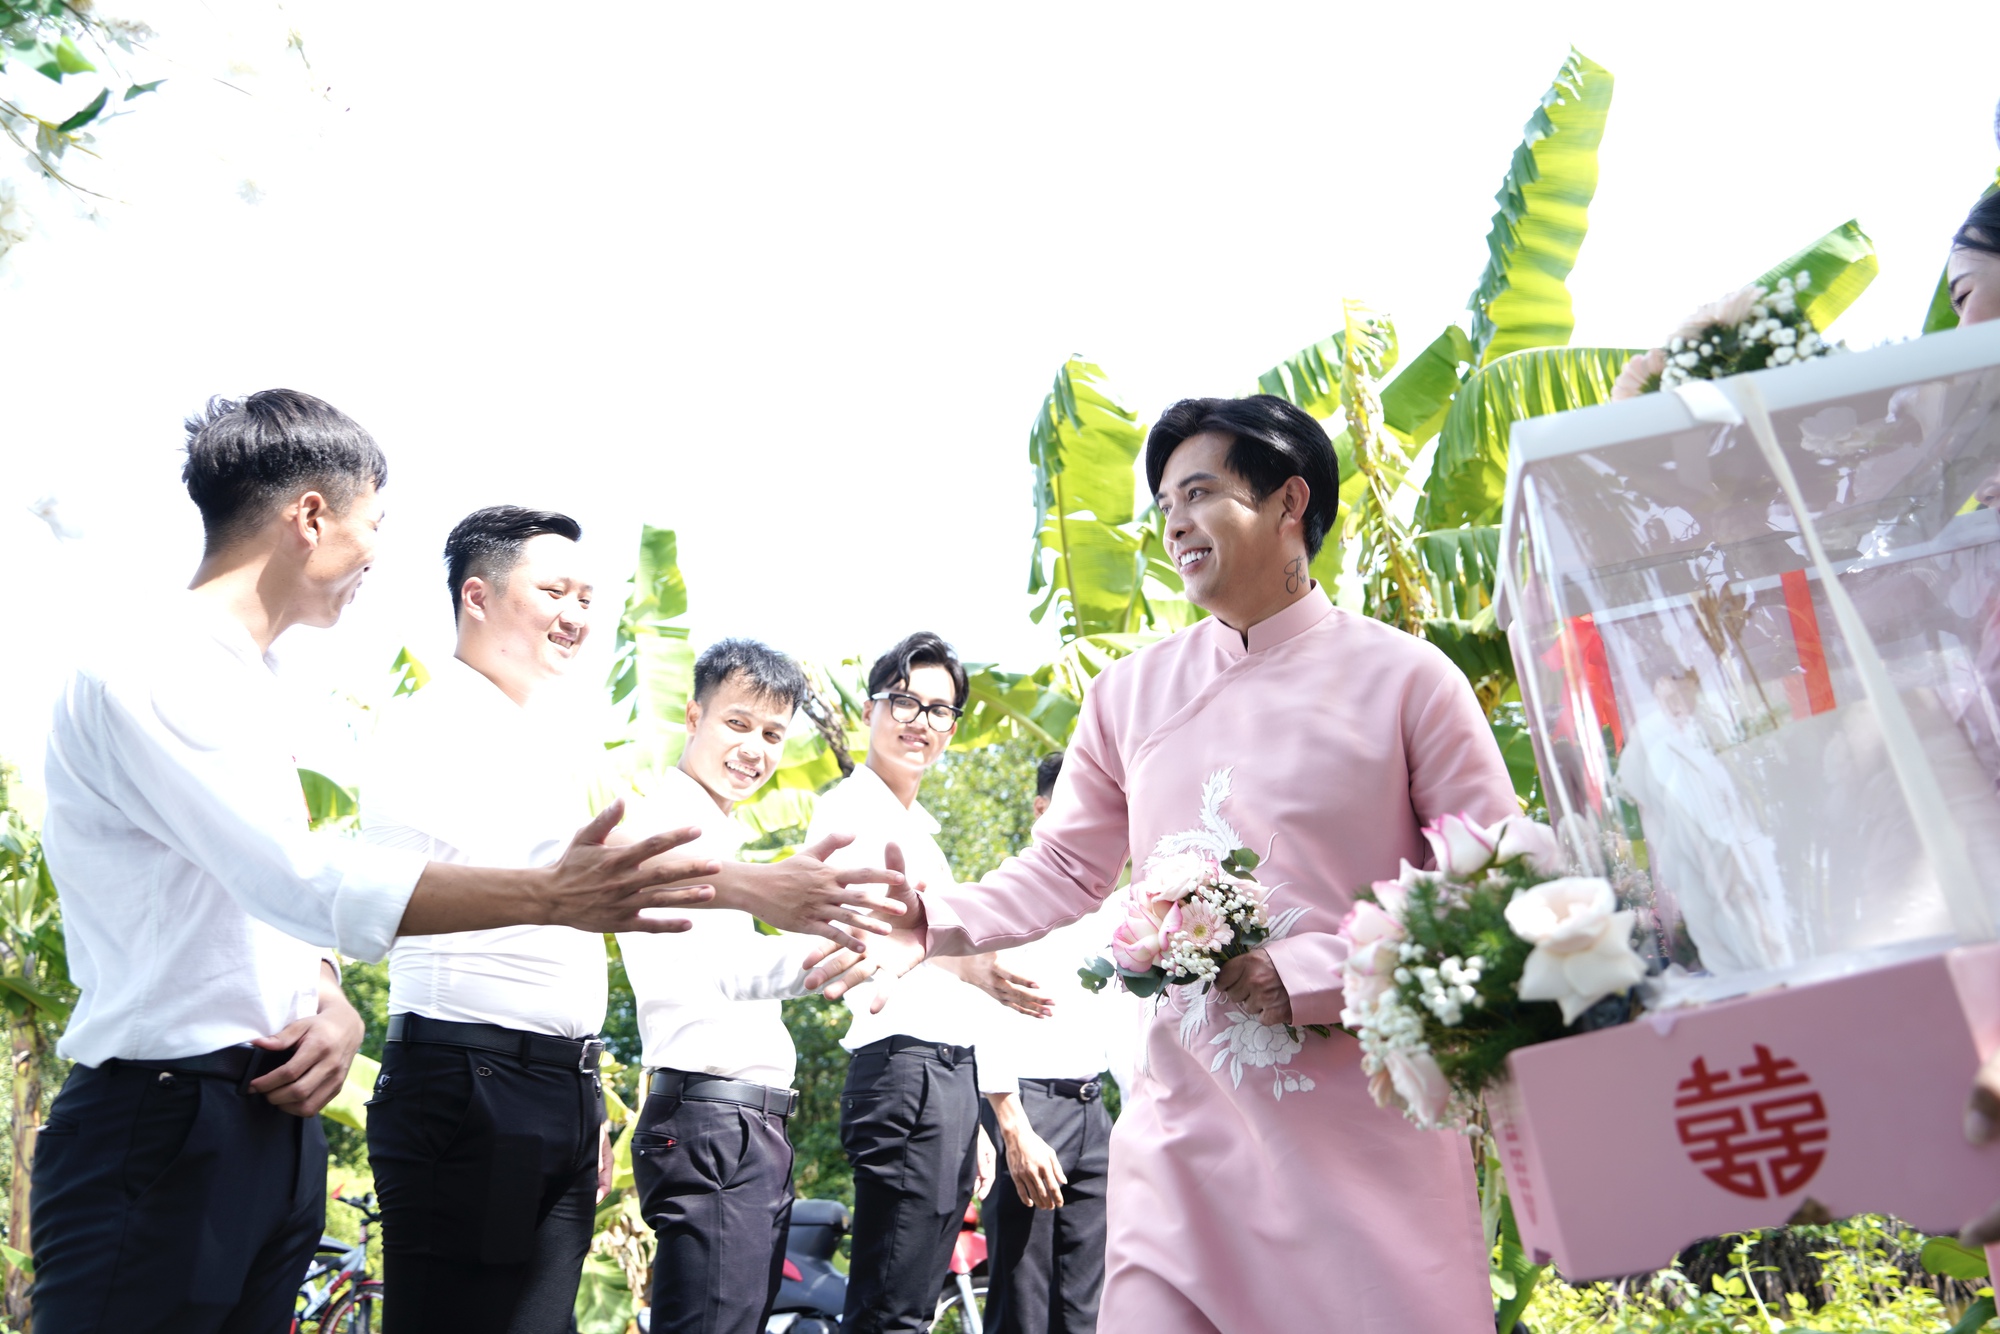 Hồ Quang Hiếu chính thức làm đám hỏi với Tuệ Như sau gần 1 năm sống chung - Ảnh 4.